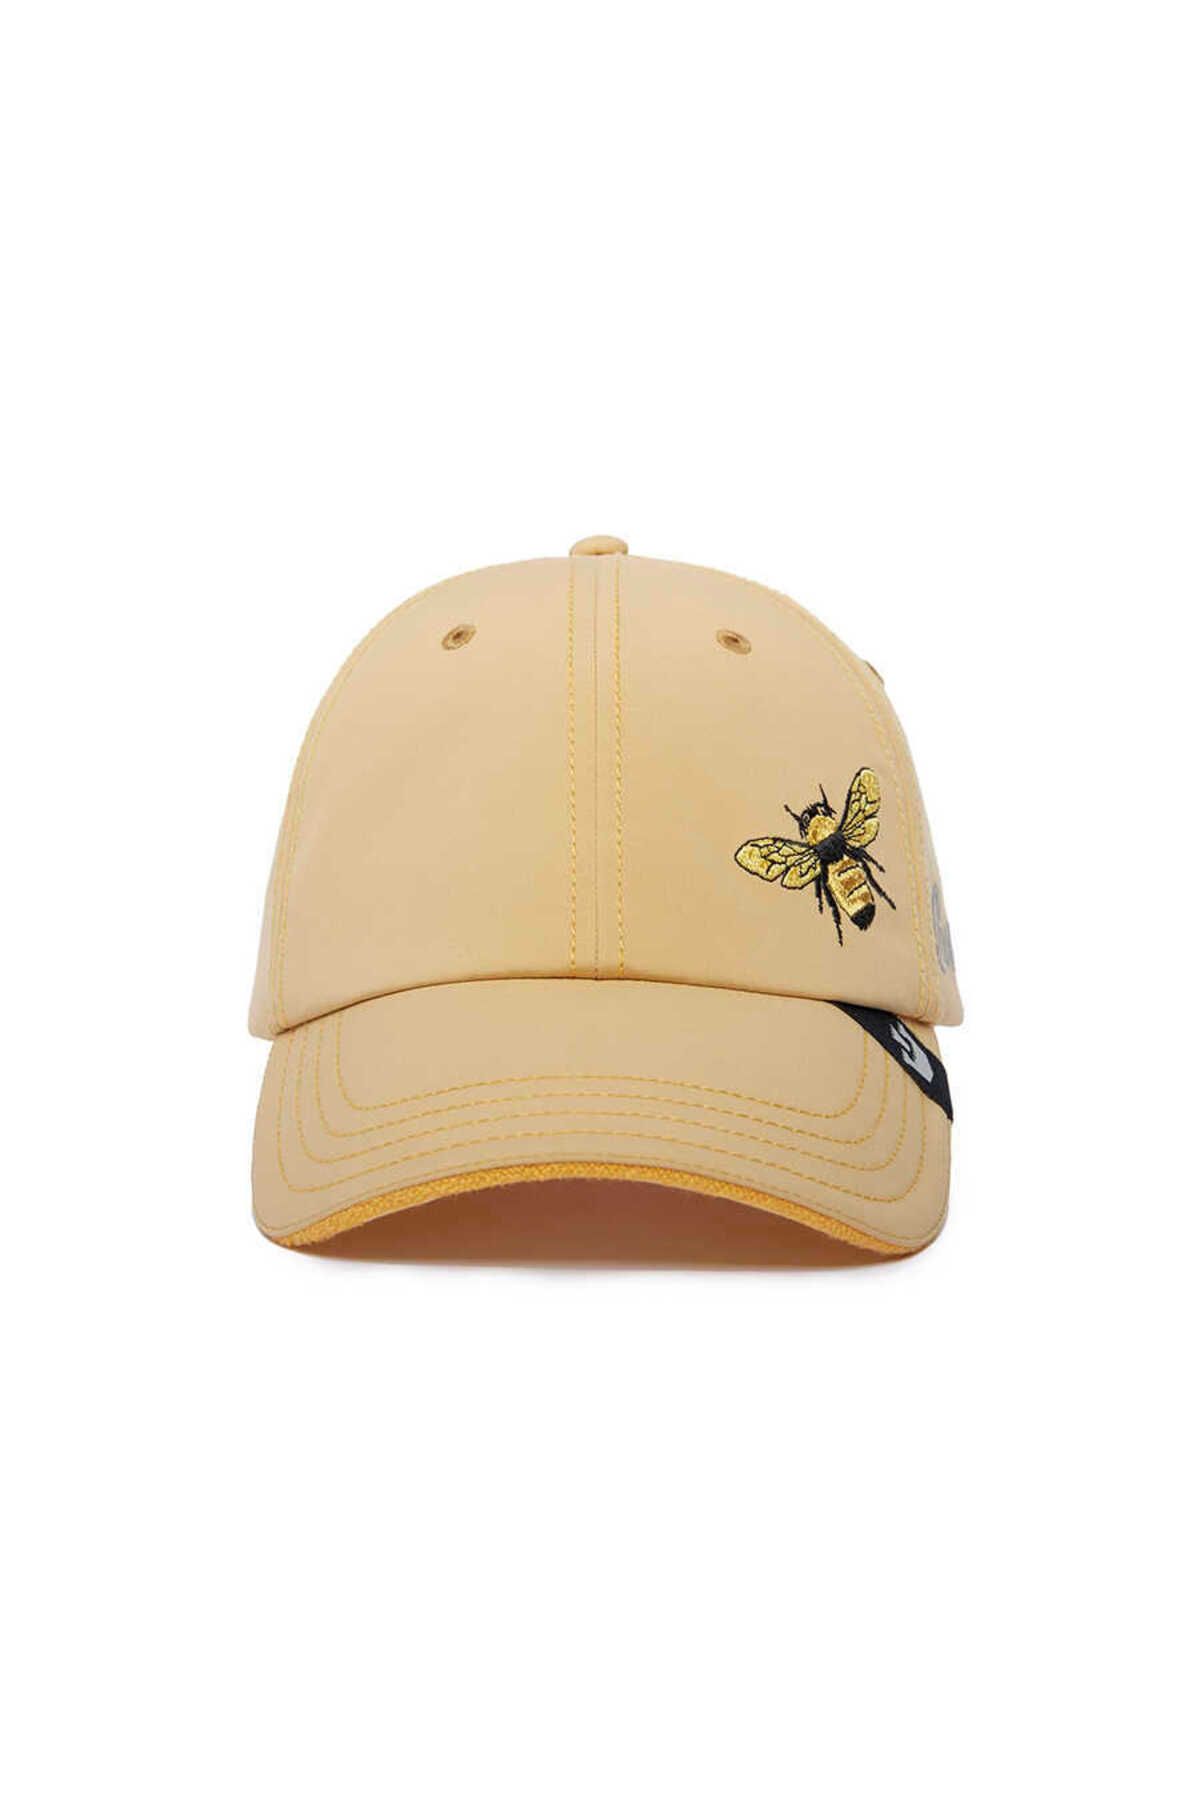 Goorin Bros Honey Love ( Arı Figürlü ) Şapka 101-0854